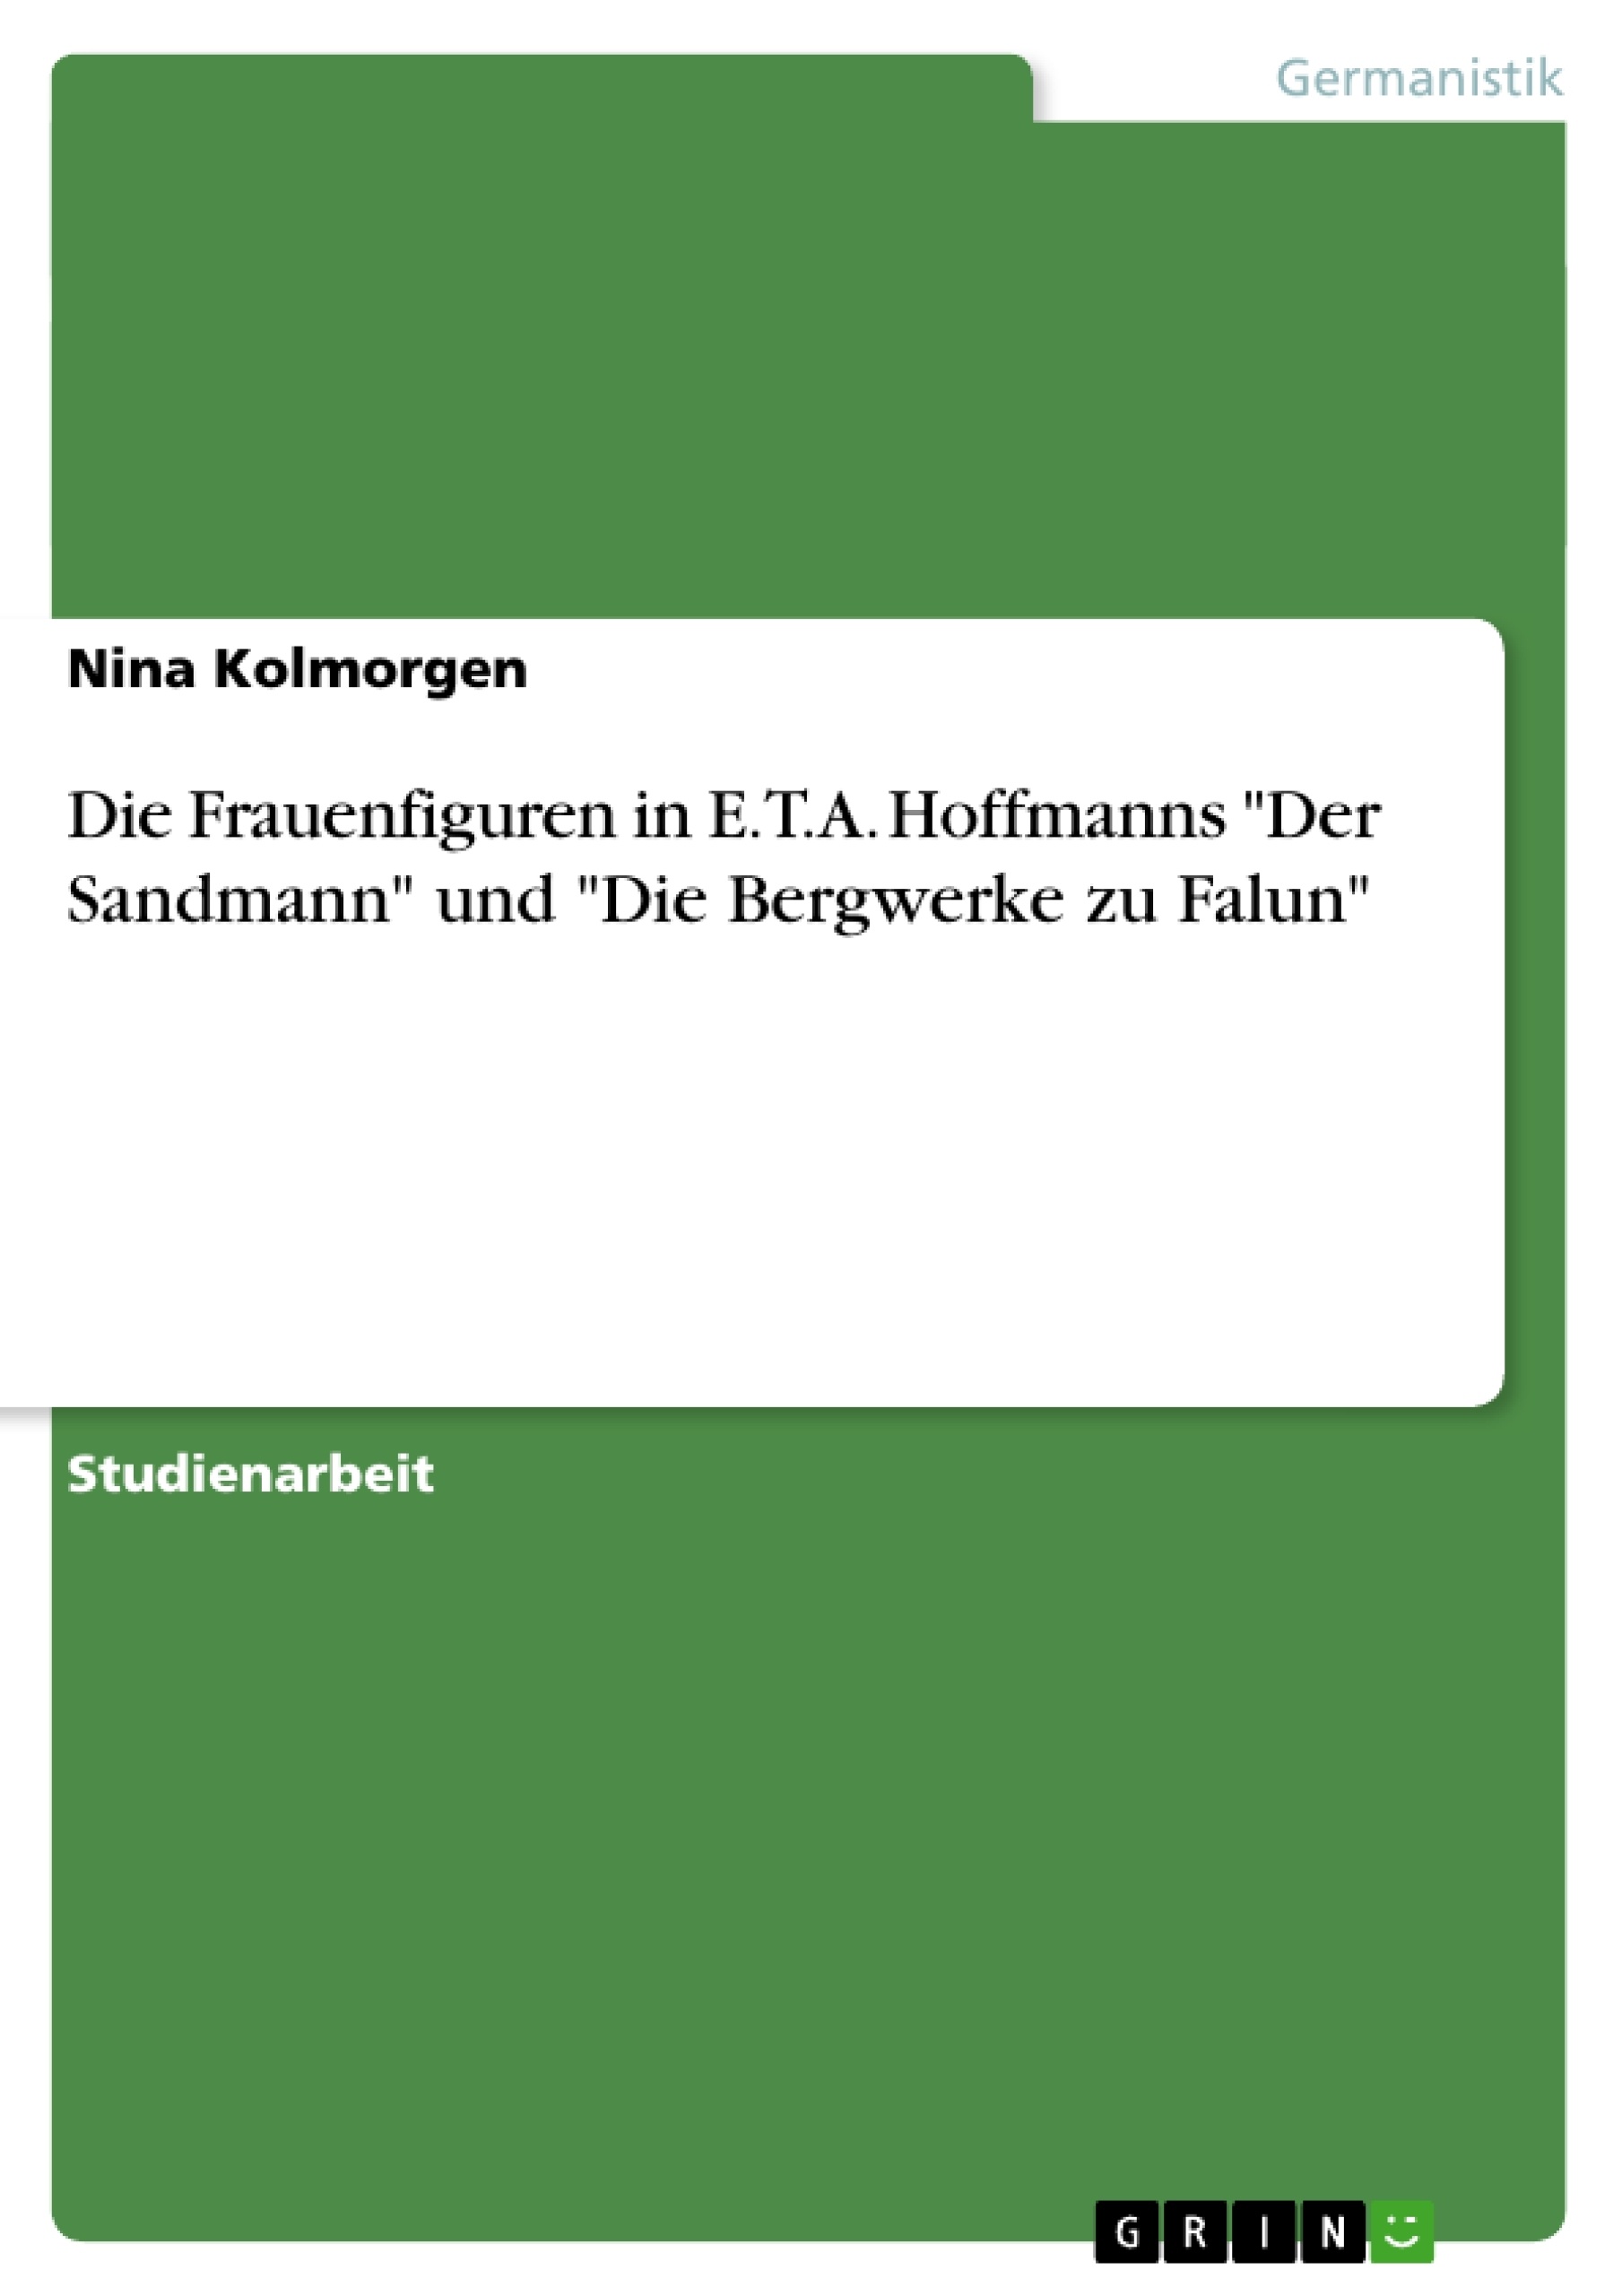 Título: Die Frauenfiguren in E.T.A. Hoffmanns "Der Sandmann" und "Die Bergwerke zu Falun"